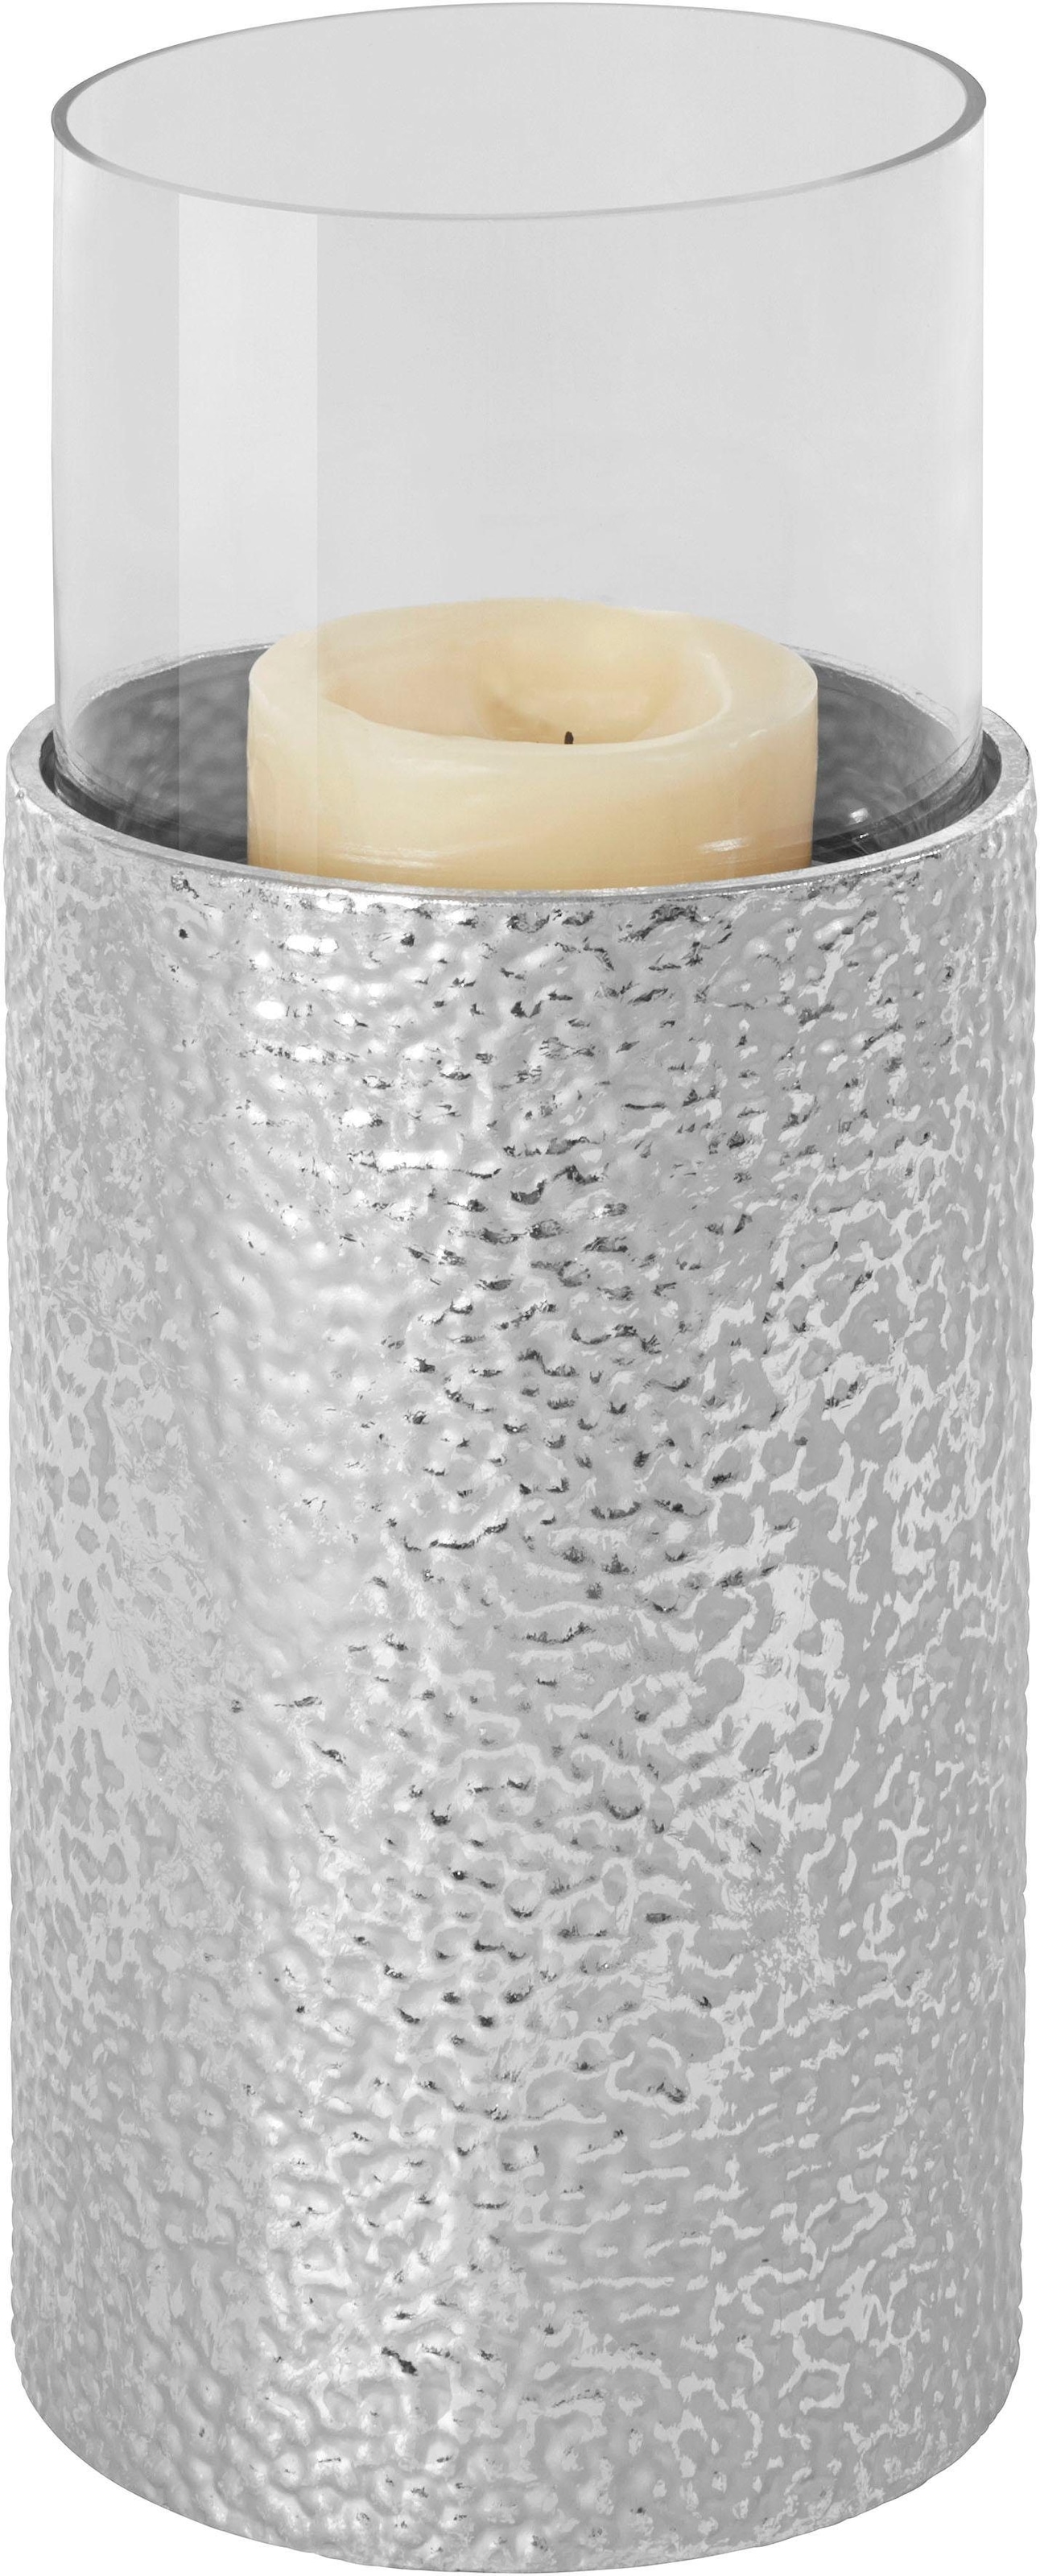 Home affaire Windlicht, (1 St.), Bodenwindlicht, aus Metall, mit Glaseinsatz, ideal für Stumpenkerzen